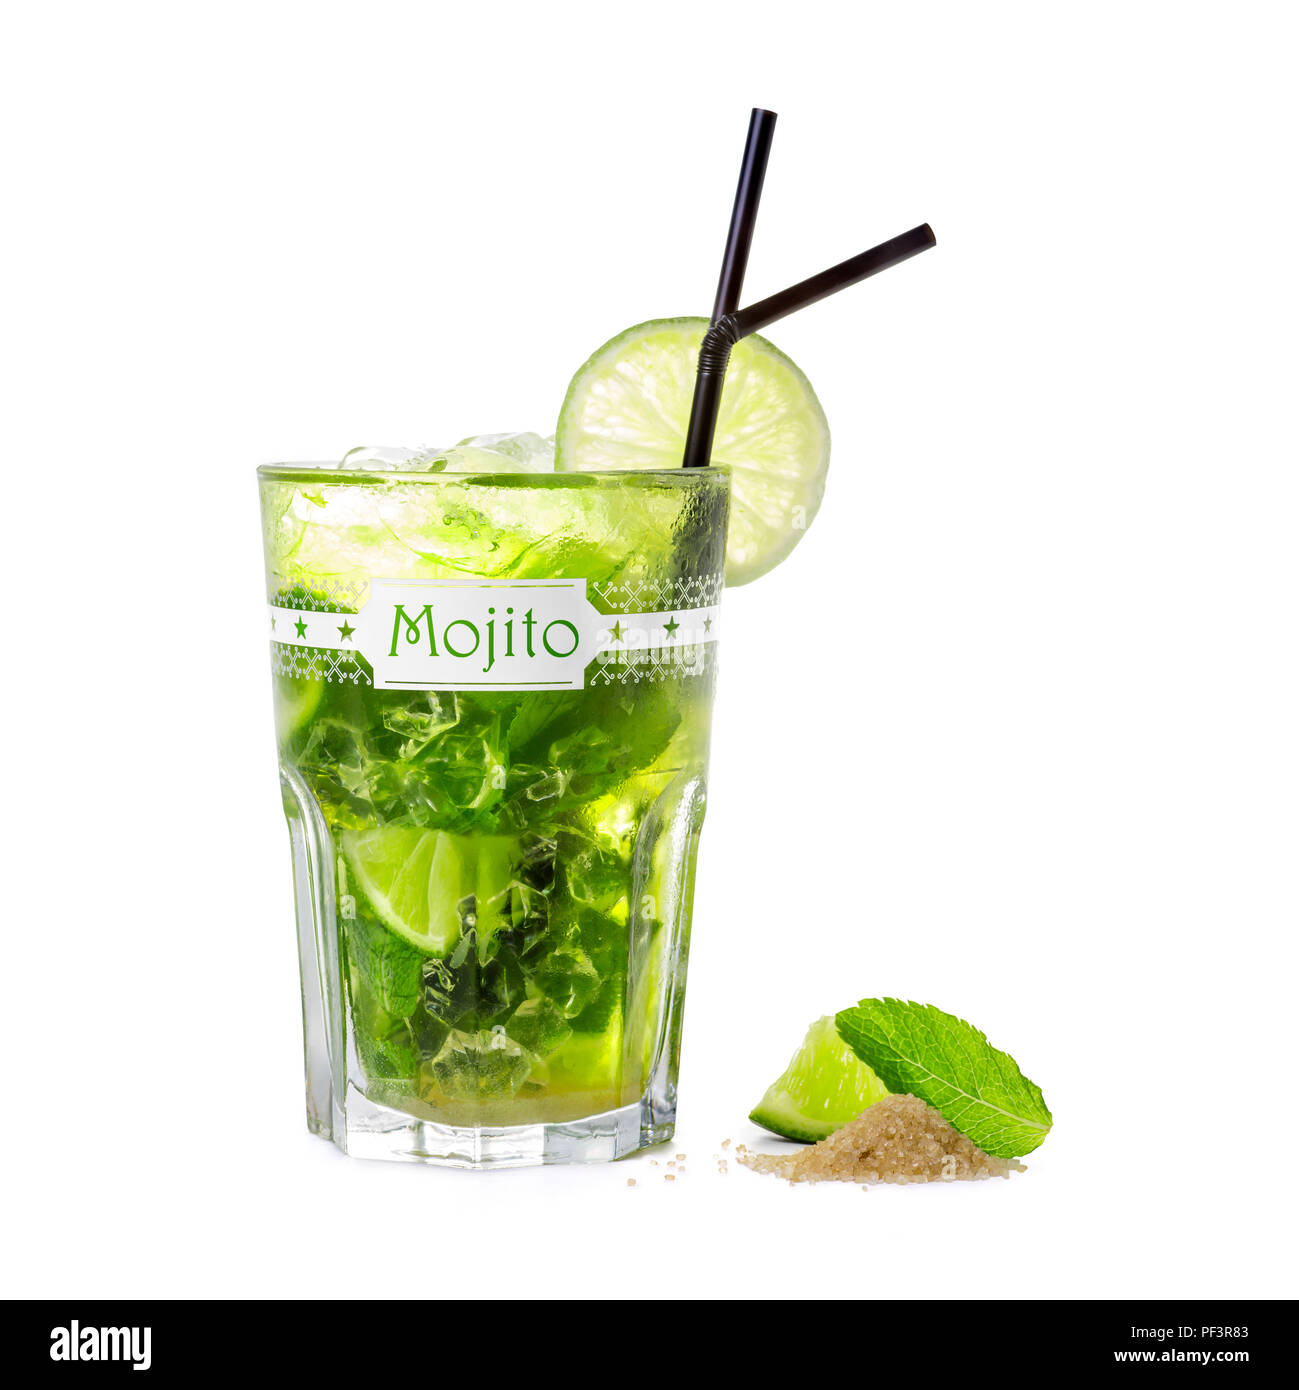 Un cocktail mojito fotografato su uno sfondo bianco. Si tratta di un molto rinfrescante drink per le calde giornate estive. Foto Stock